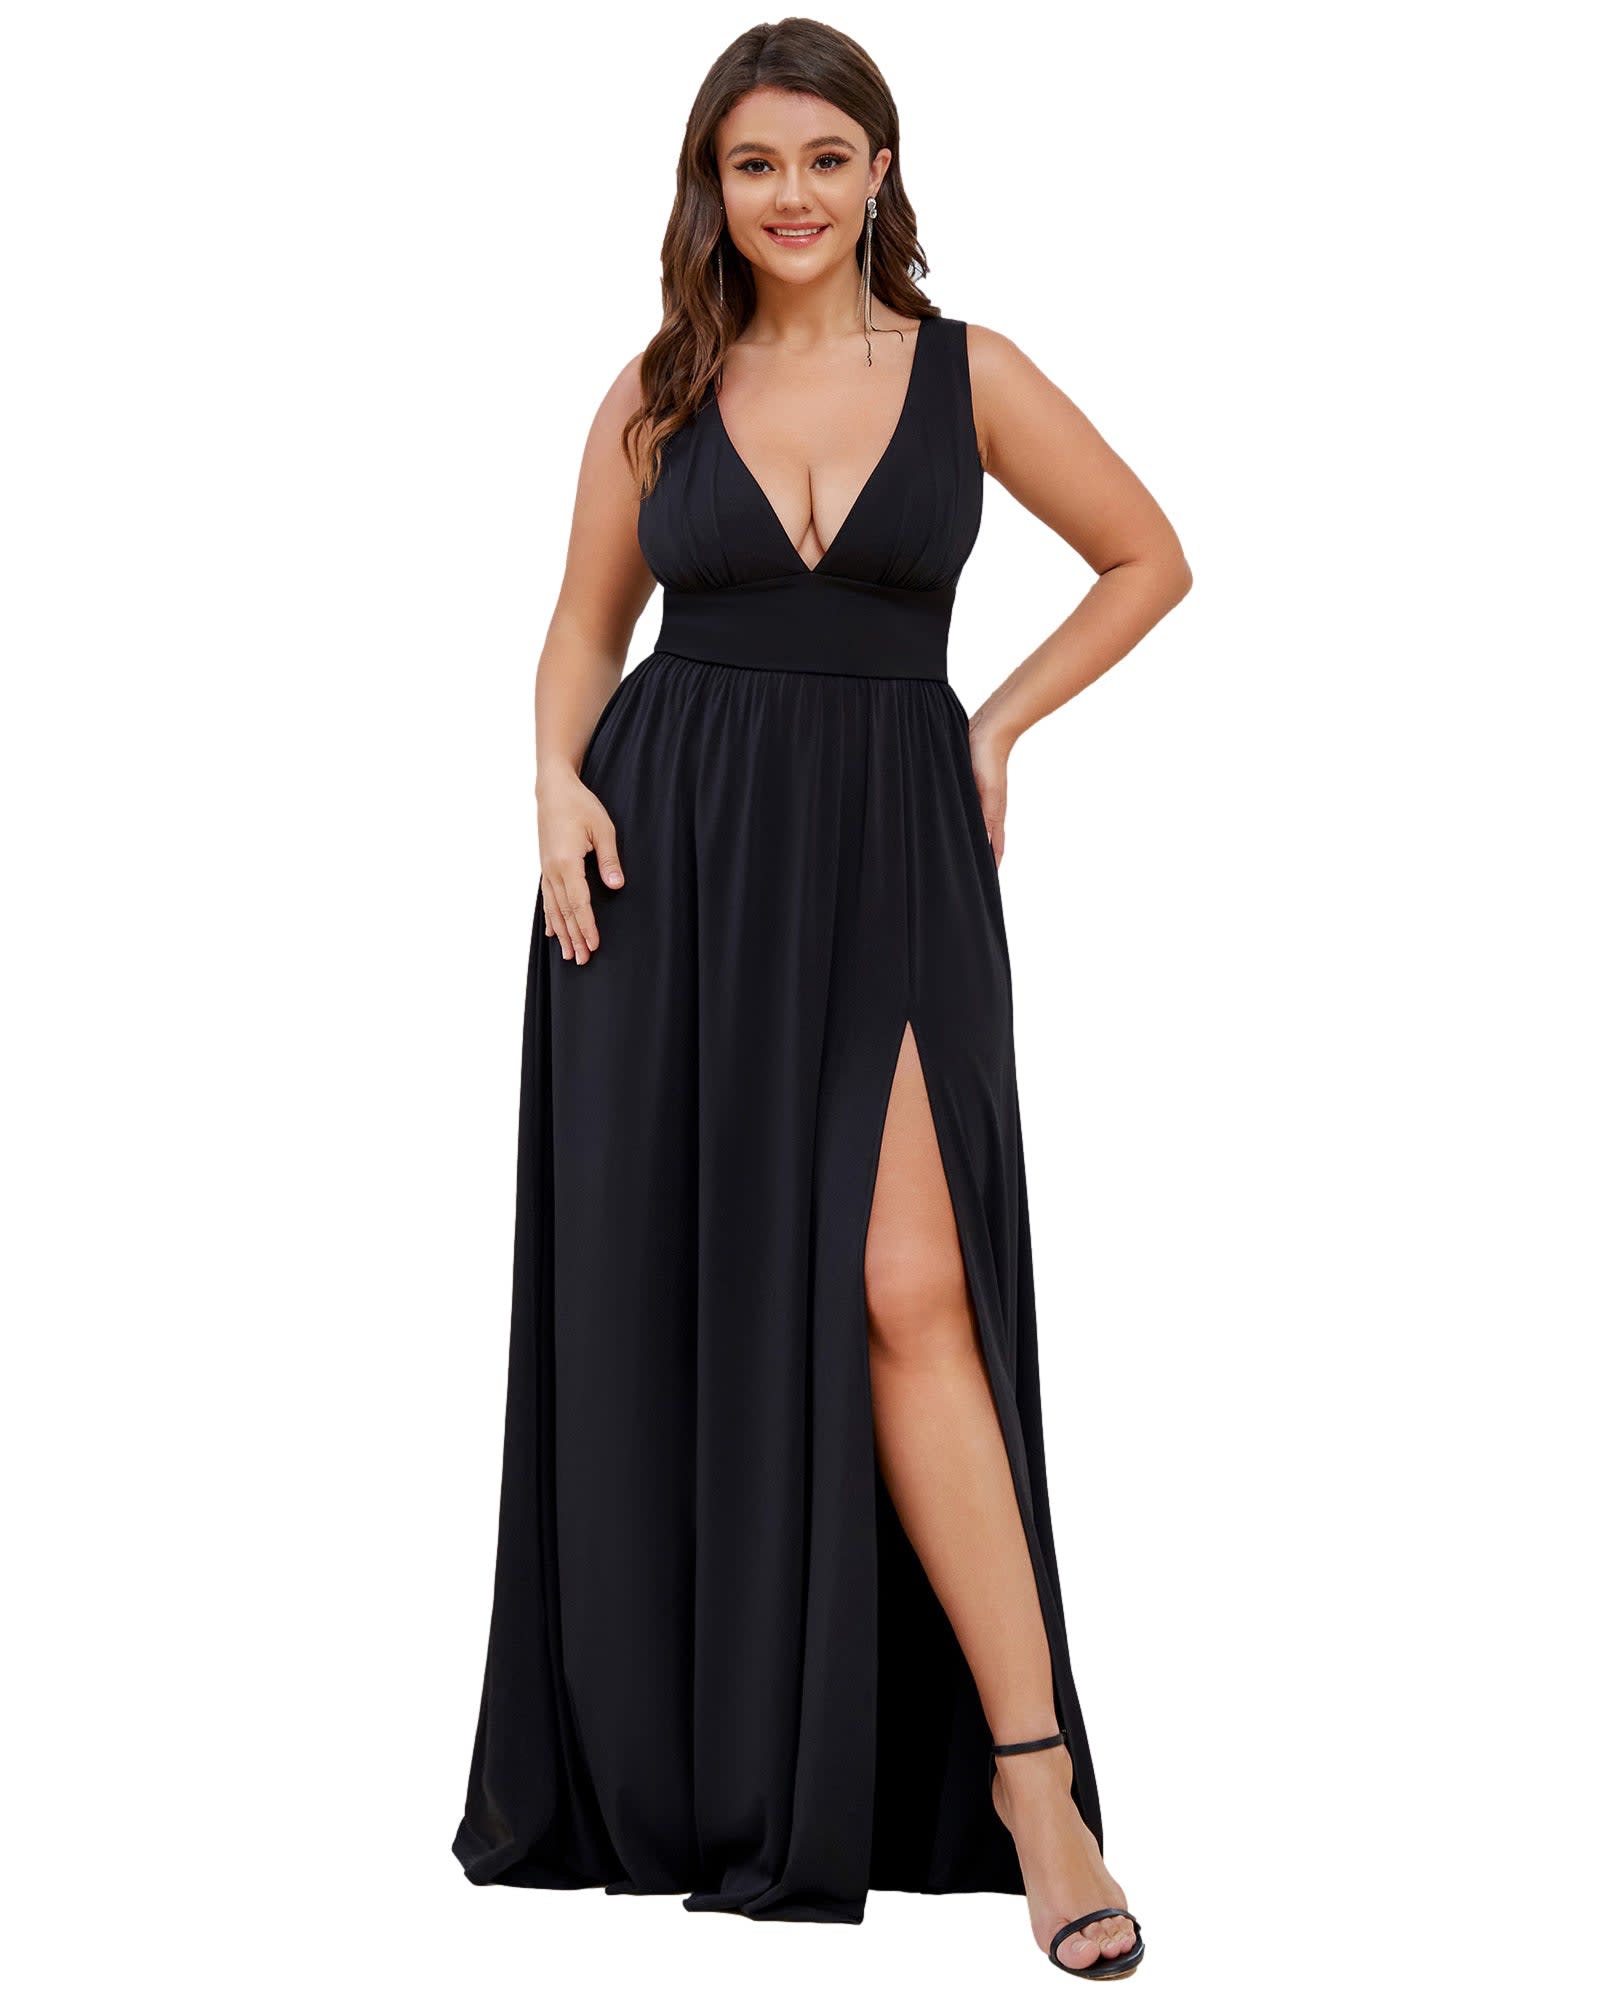 Sleeveless V-Neck Empire Waist High Slit Floor-Length Evening Dress | Black